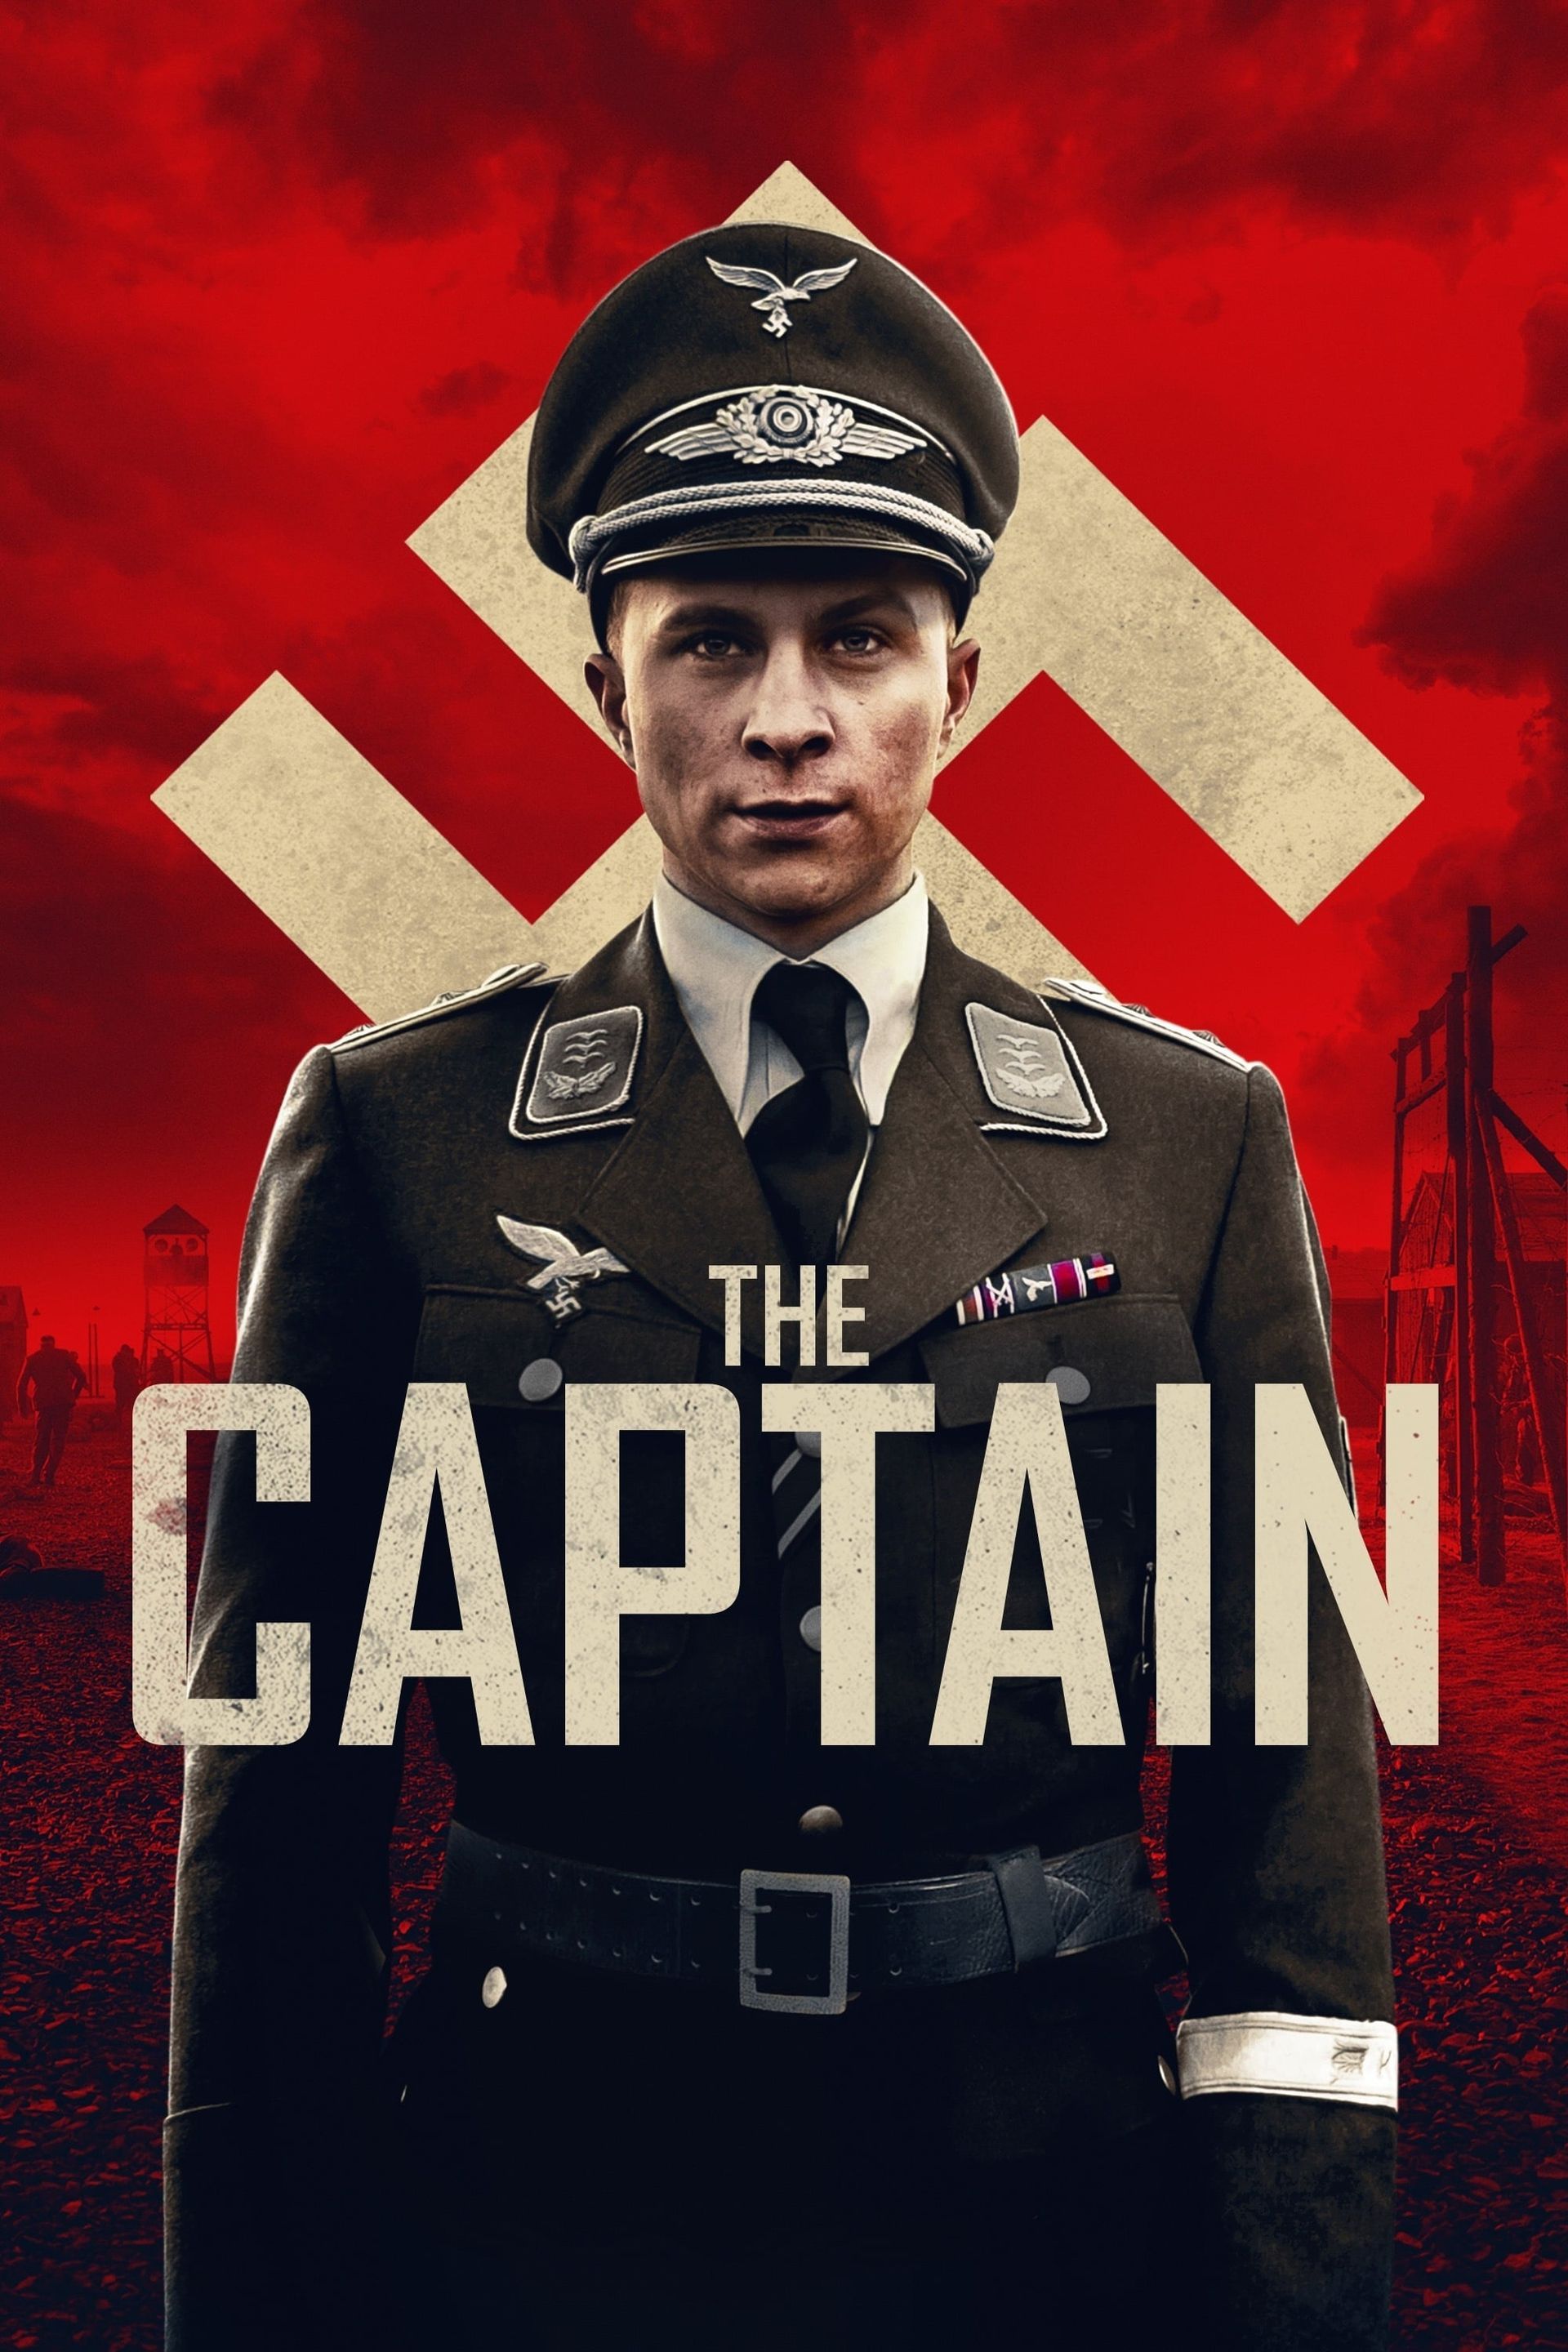 The Captain – The Captain Online